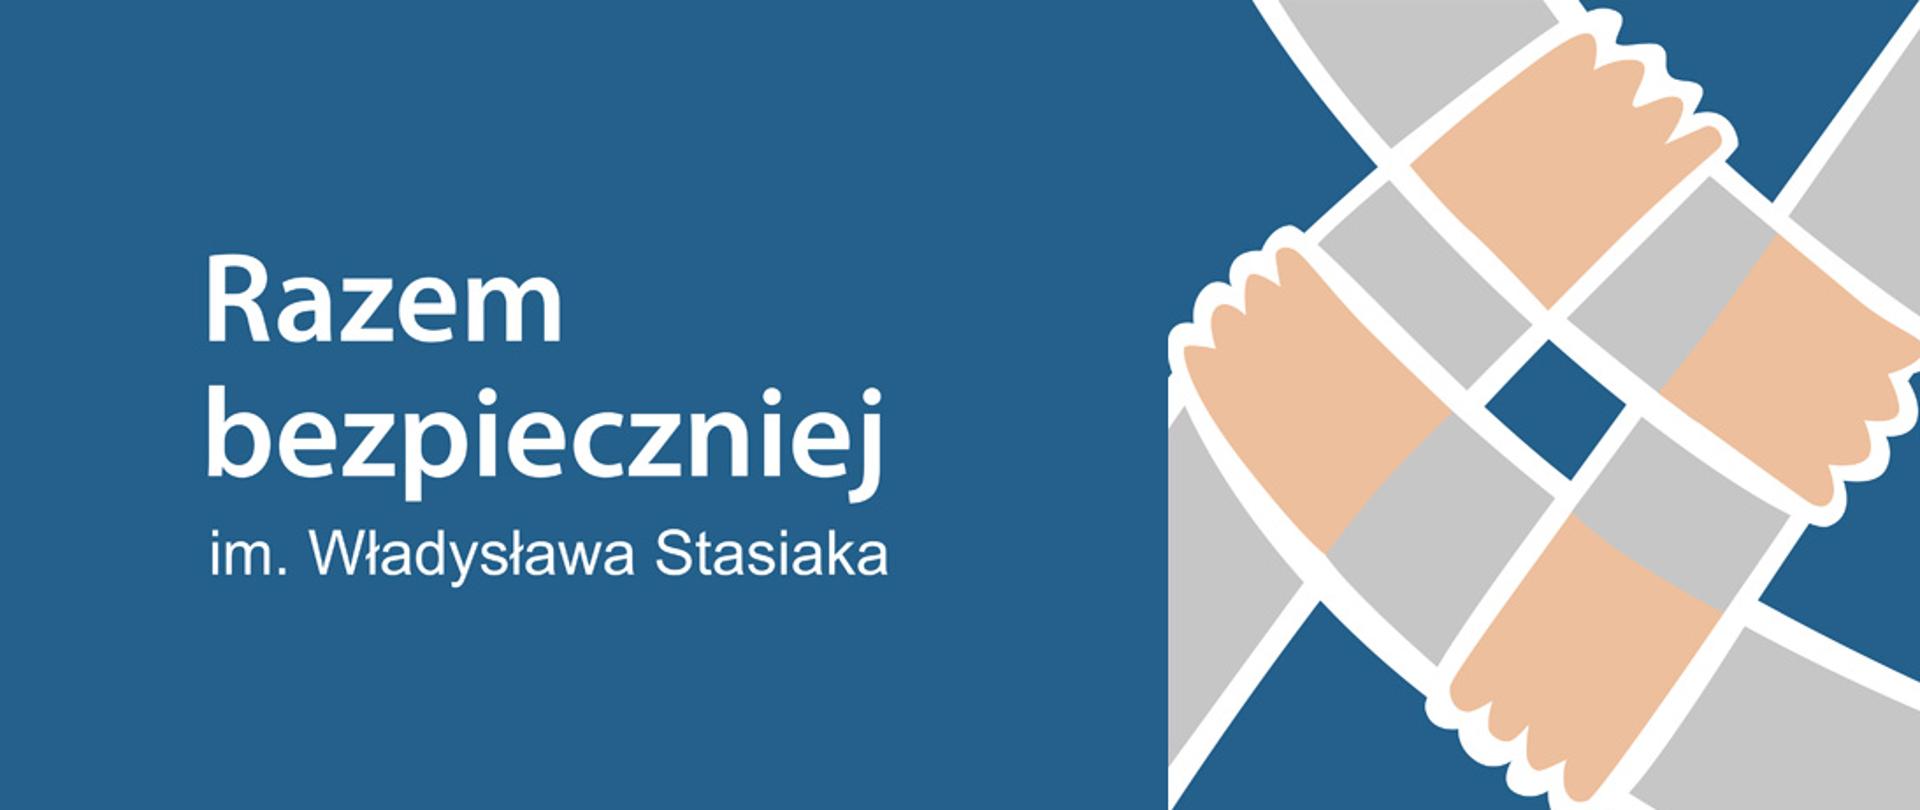 Logo składające się z czterech trzymających się dłoni i nazwa Programu ograniczania przestępczości i aspołecznych zachowań "Razem Bezpieczniej im. Władysława Stasiaka"